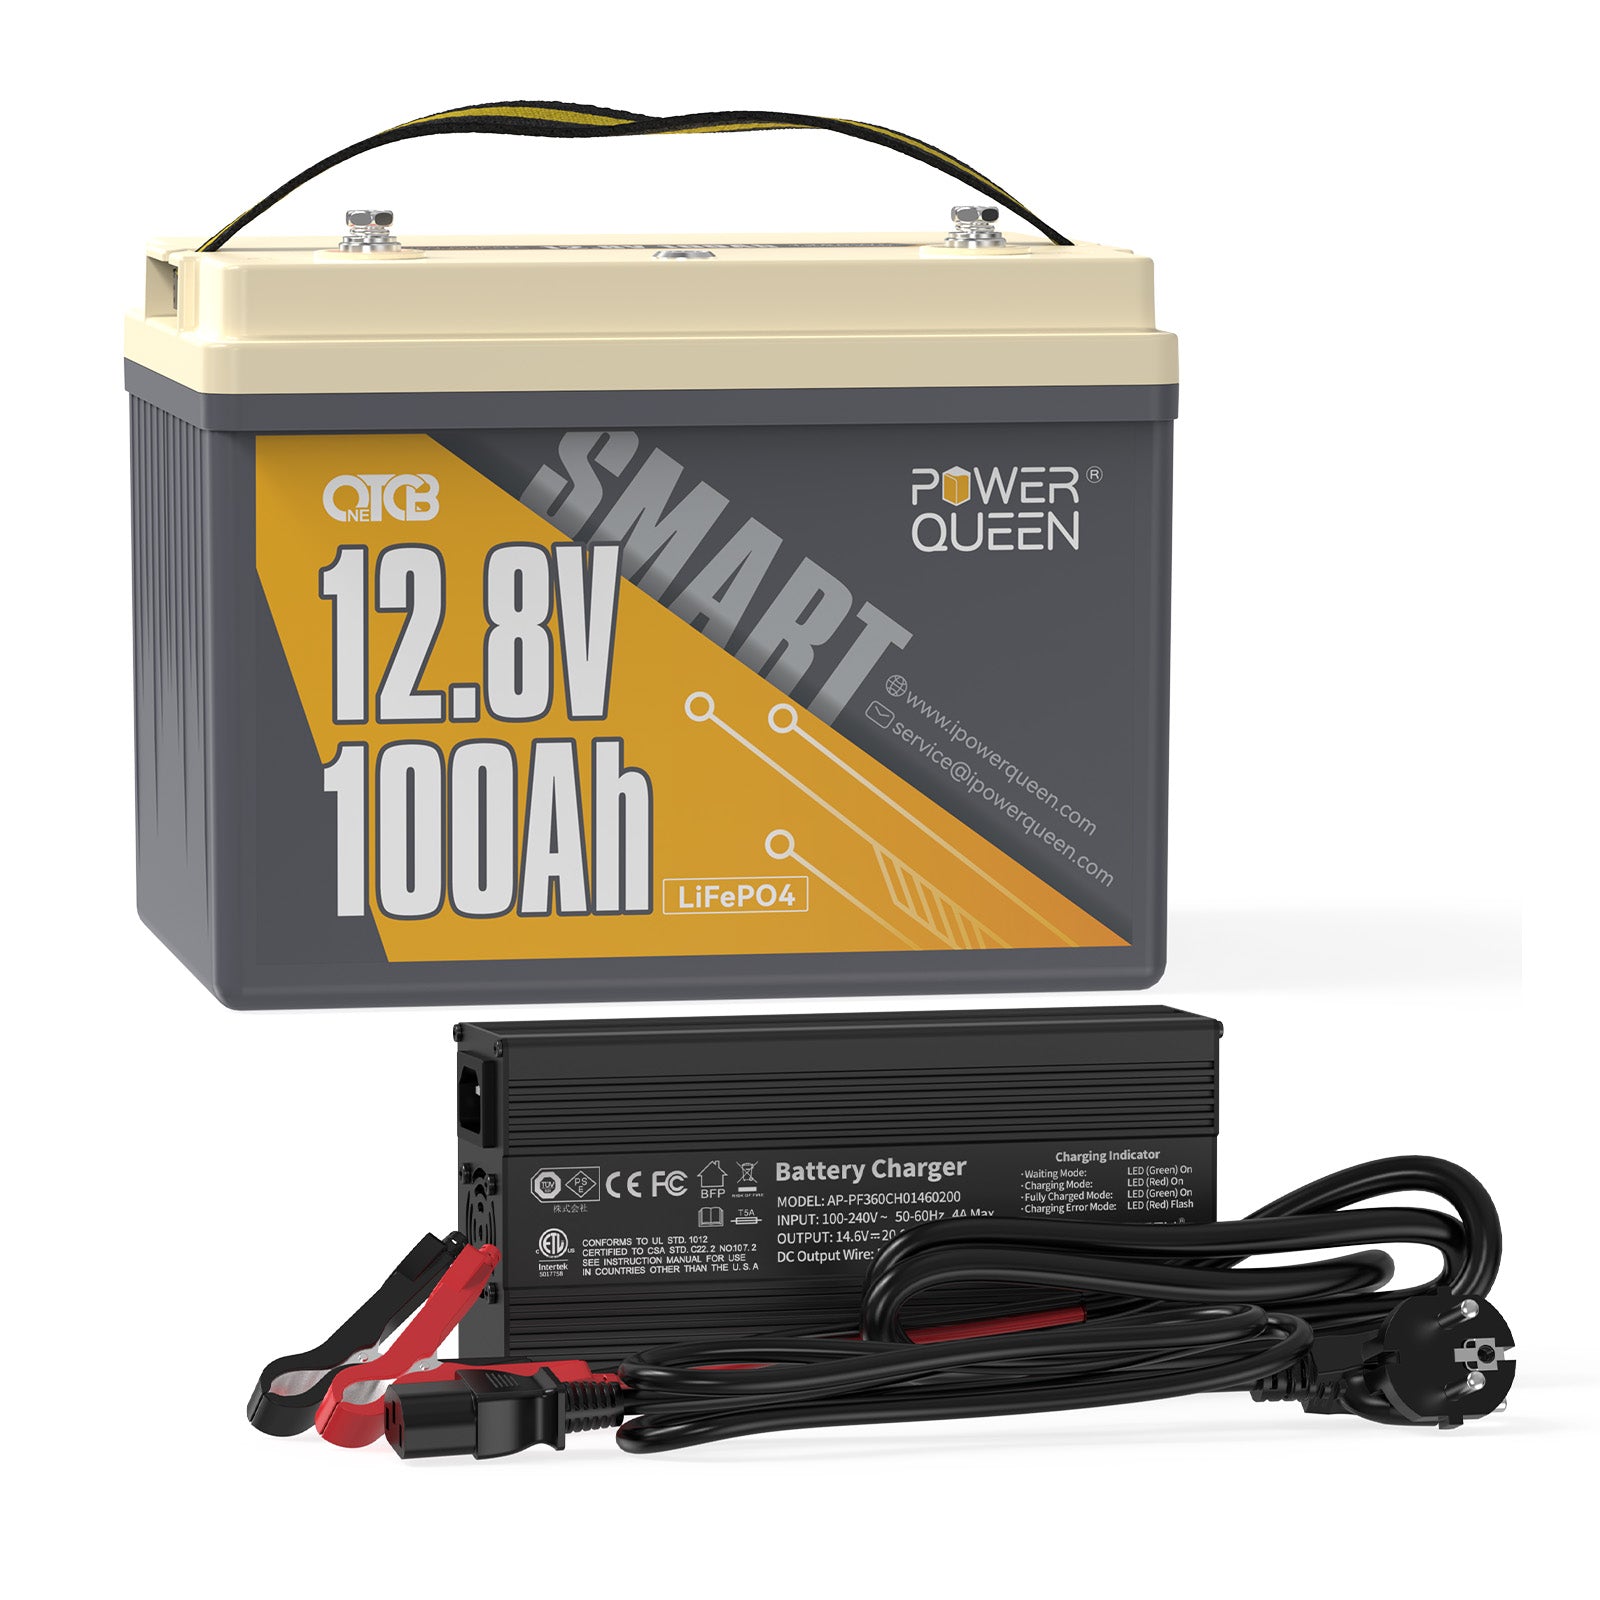 Power Queen 12V 100Ah lage temperatuur OTCB LiFePO4-batterij met ingebouwd 100A BMS